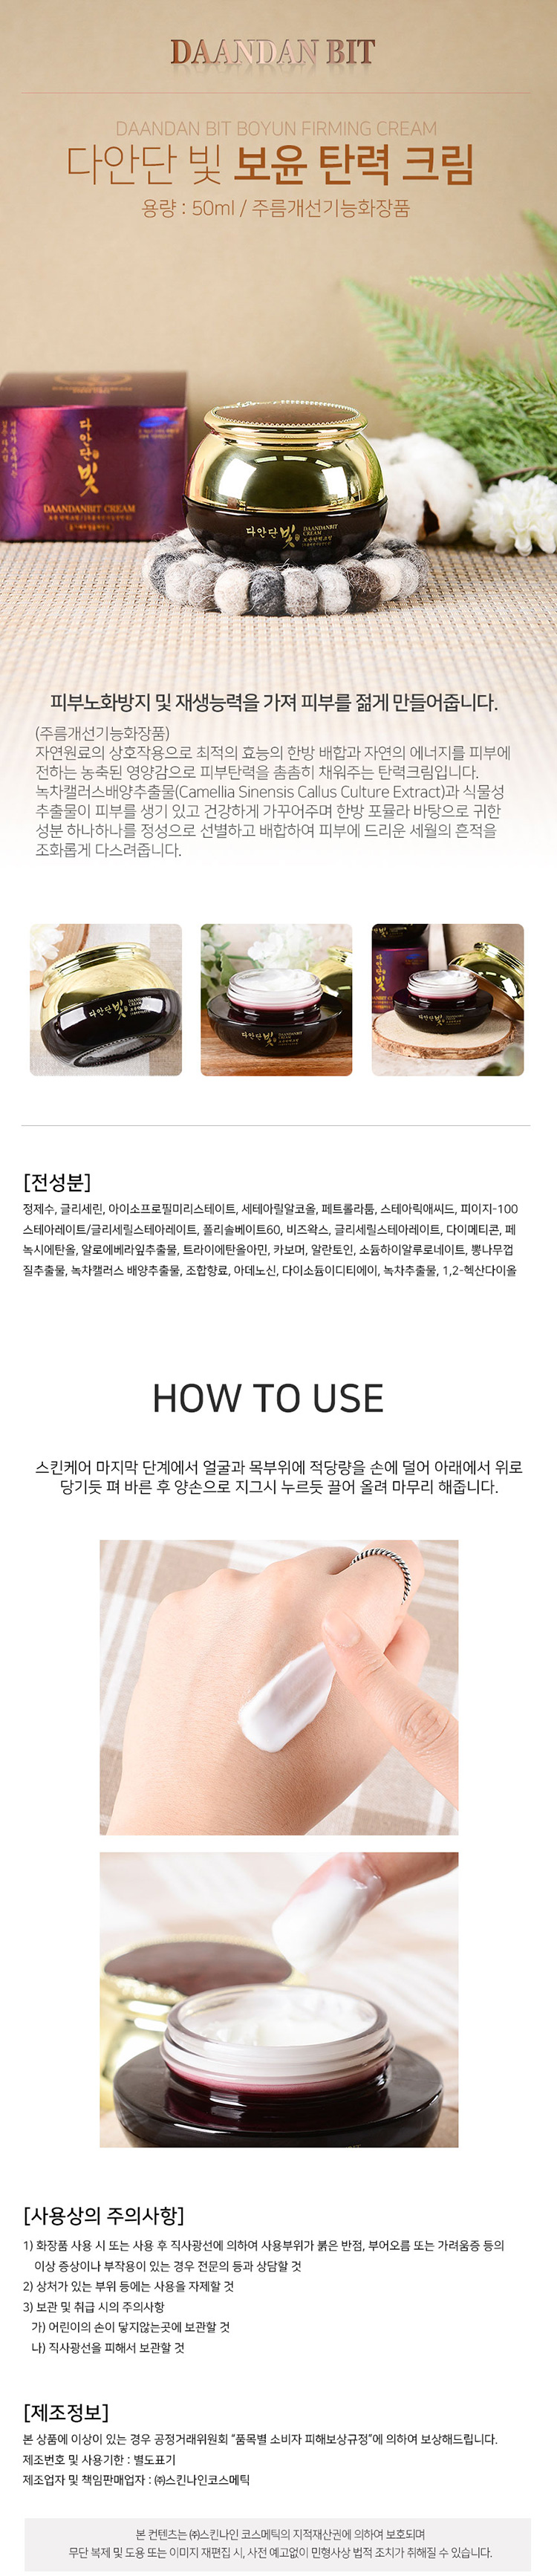 韓國 臉部保養 臉部保養 乳液 緊緻 臉部保養